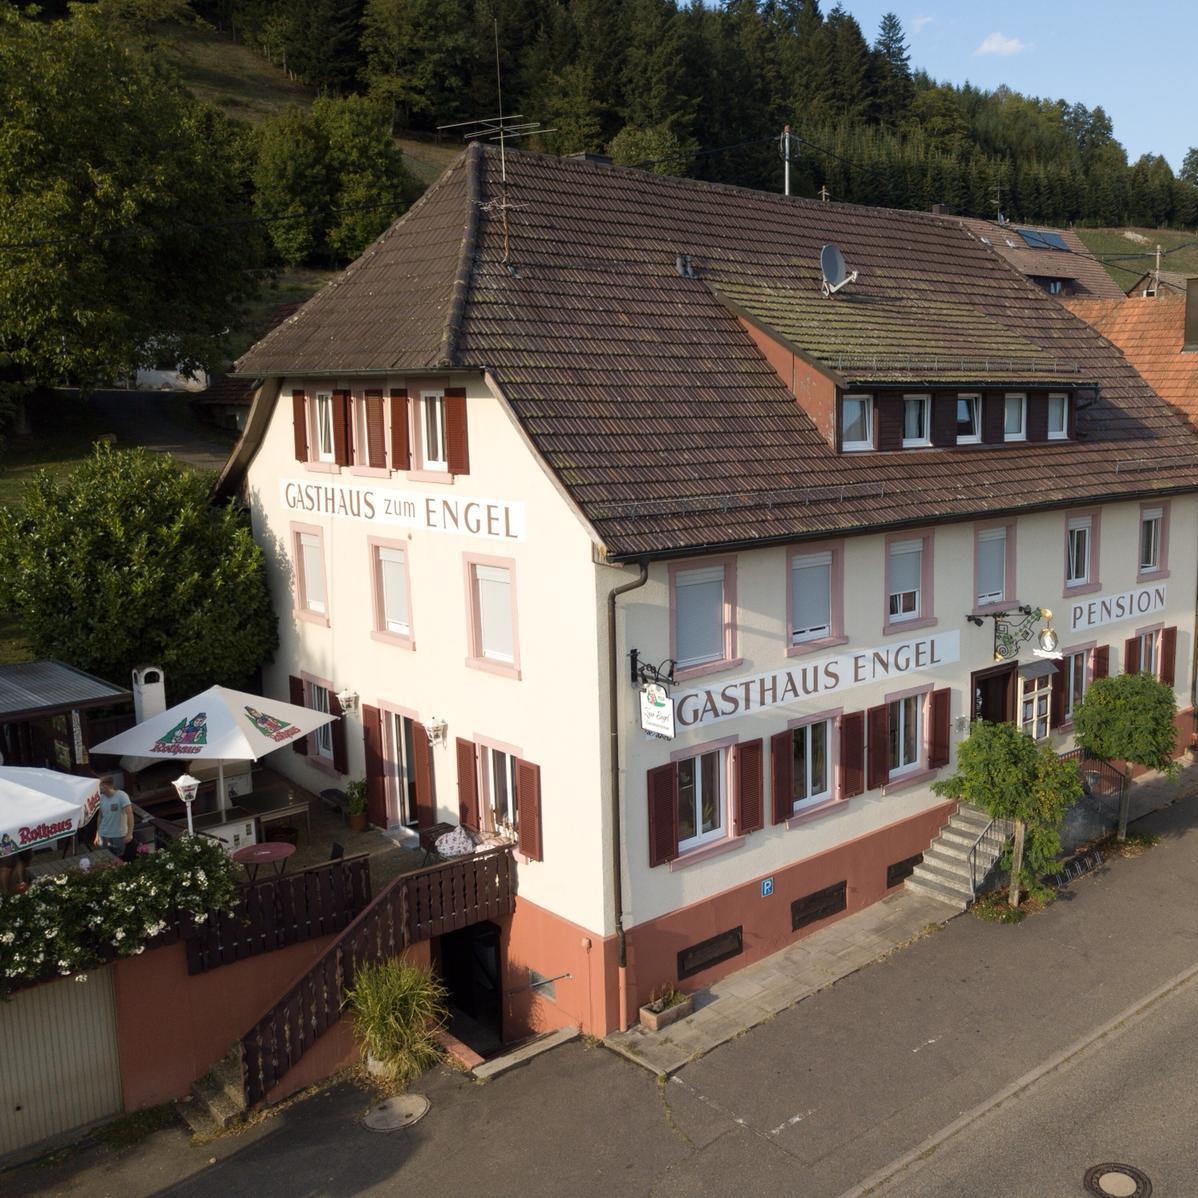 Restaurant "Gasthaus Zum Engel" in Fischerbach